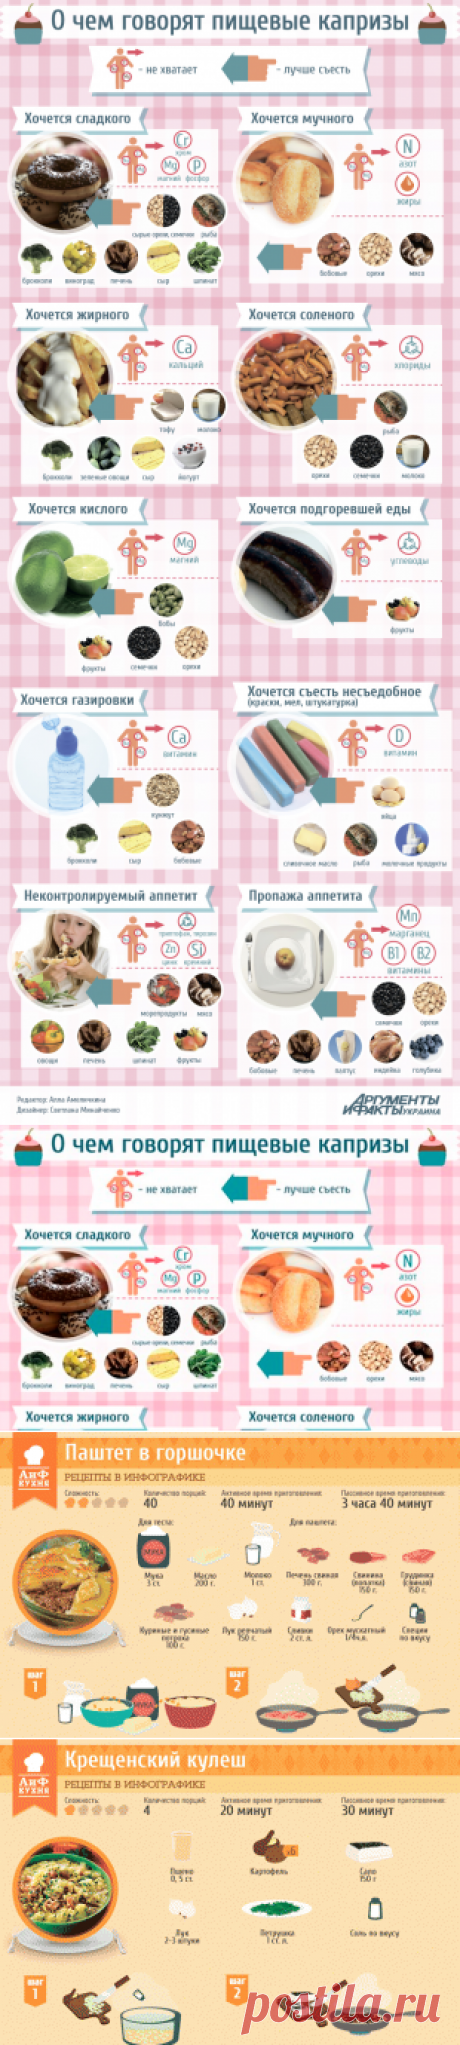 Хочется жирного, сладкого, кислого – о чем говорят пищевые капризы | Продукты и напитки | Кухня | АиФ Украина